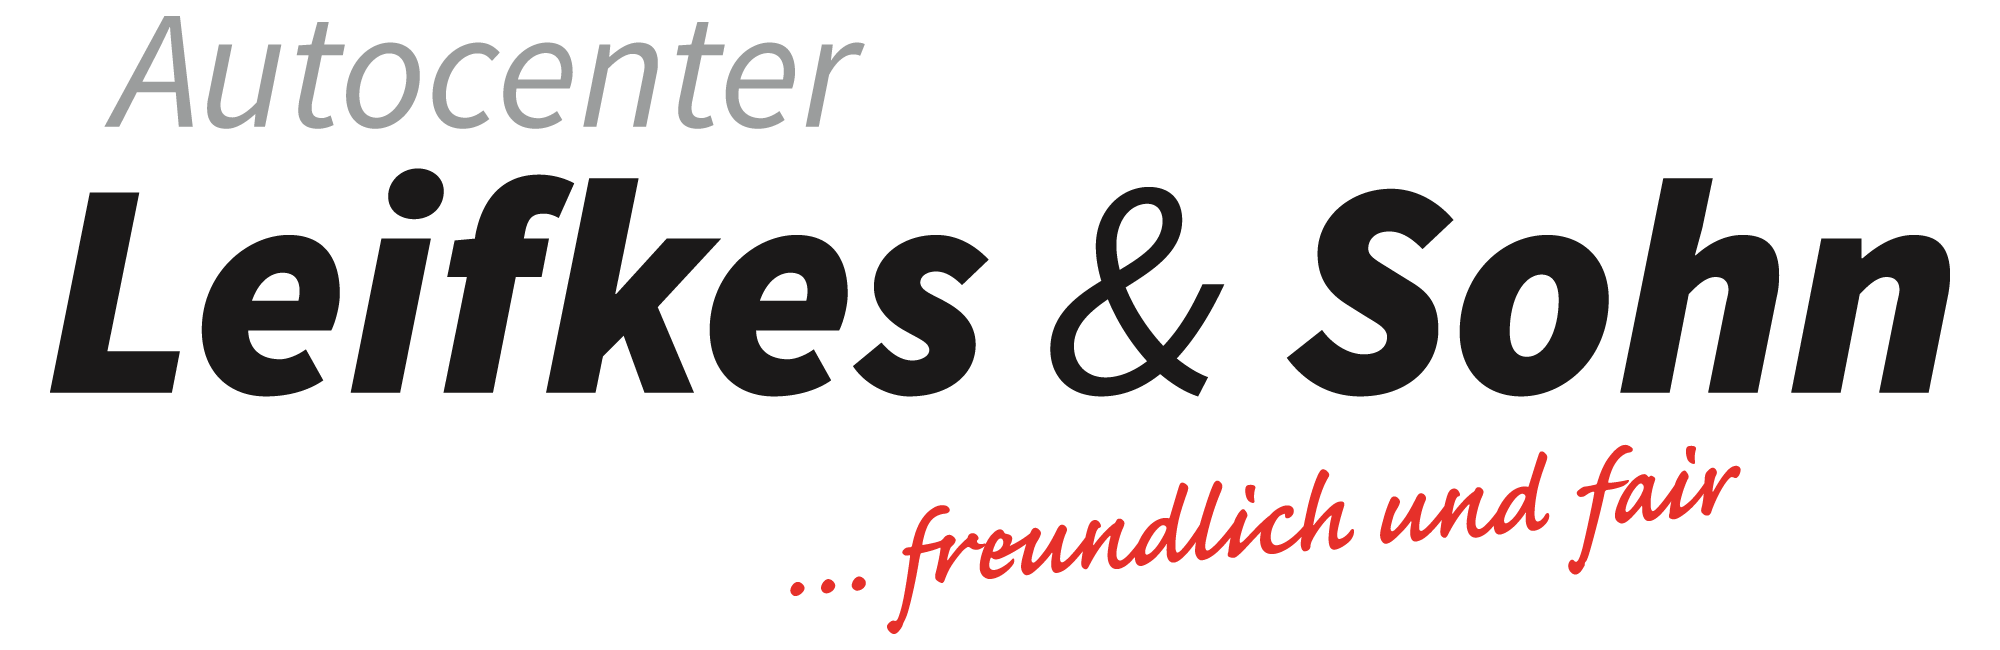 Logo von Autocenter Leifkes & Sohn GmbH